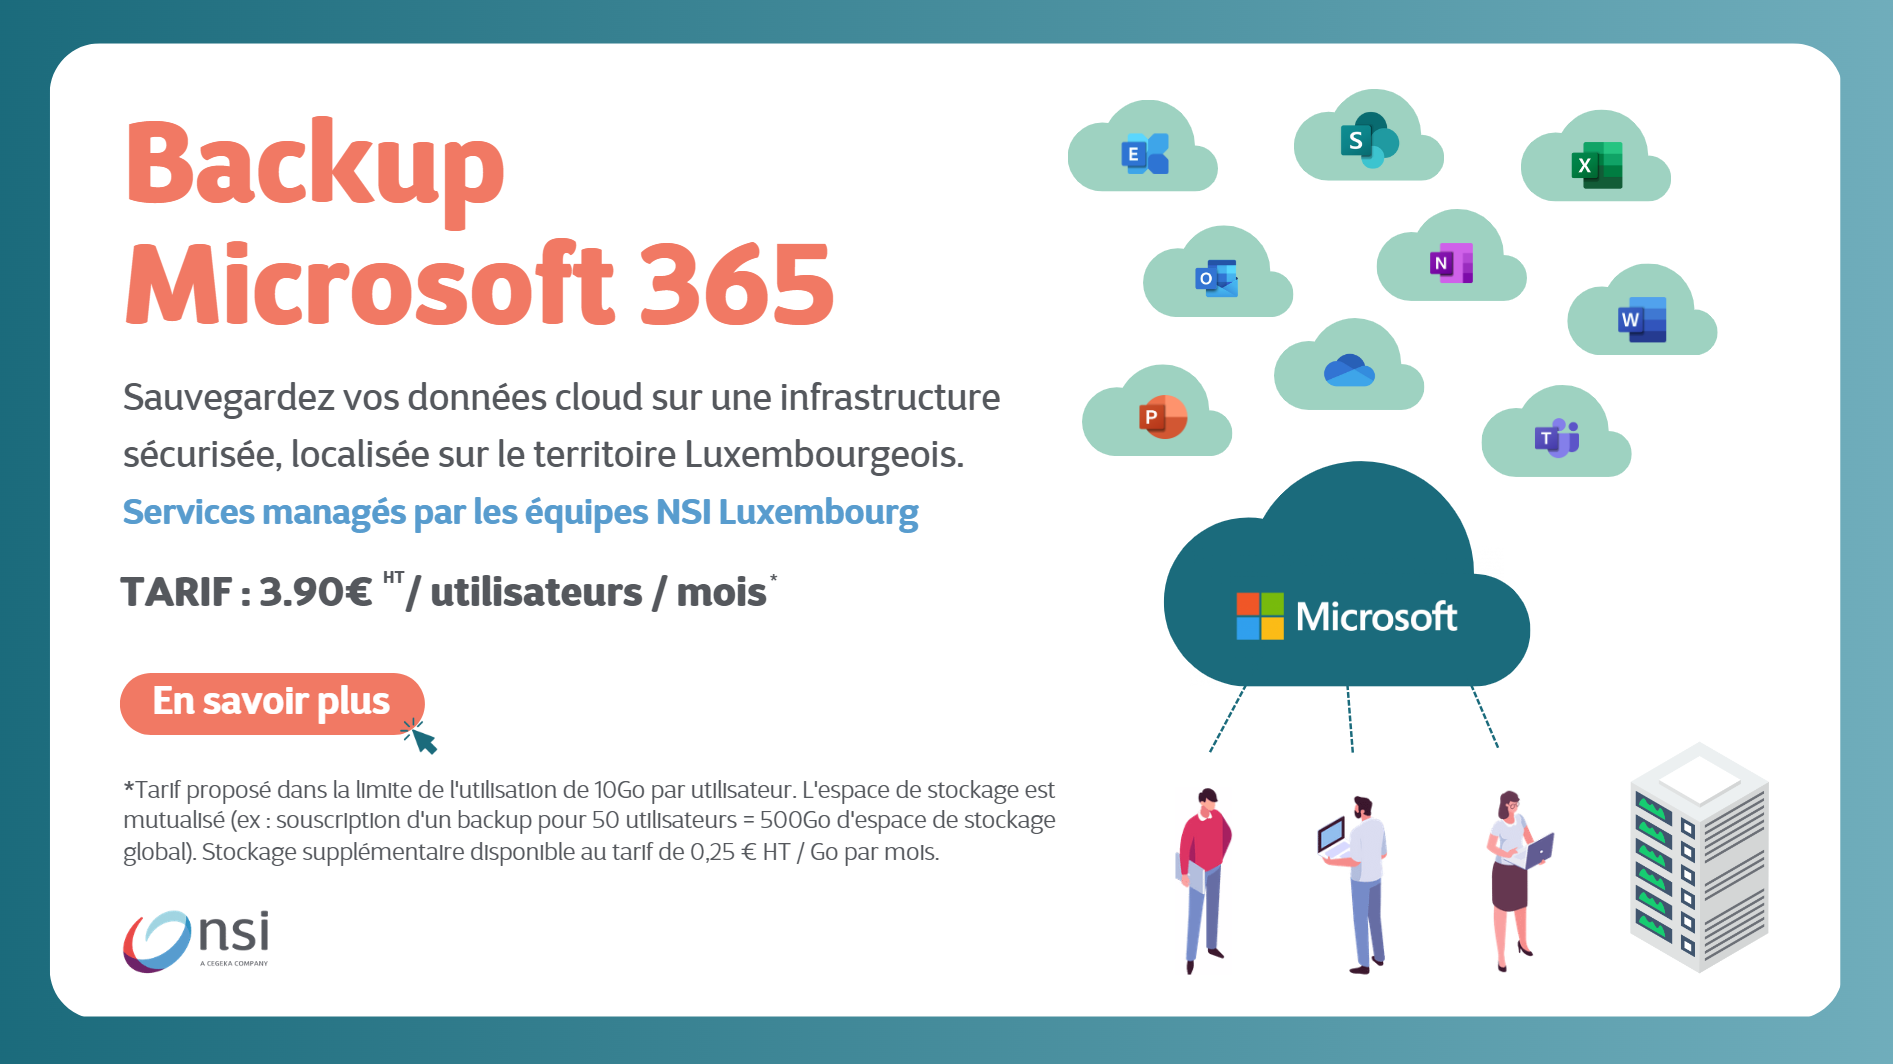 Sauvegardez vos données cloud sur une infrastructure sécurisée, localisée sur le territoire Luxembourgeois.